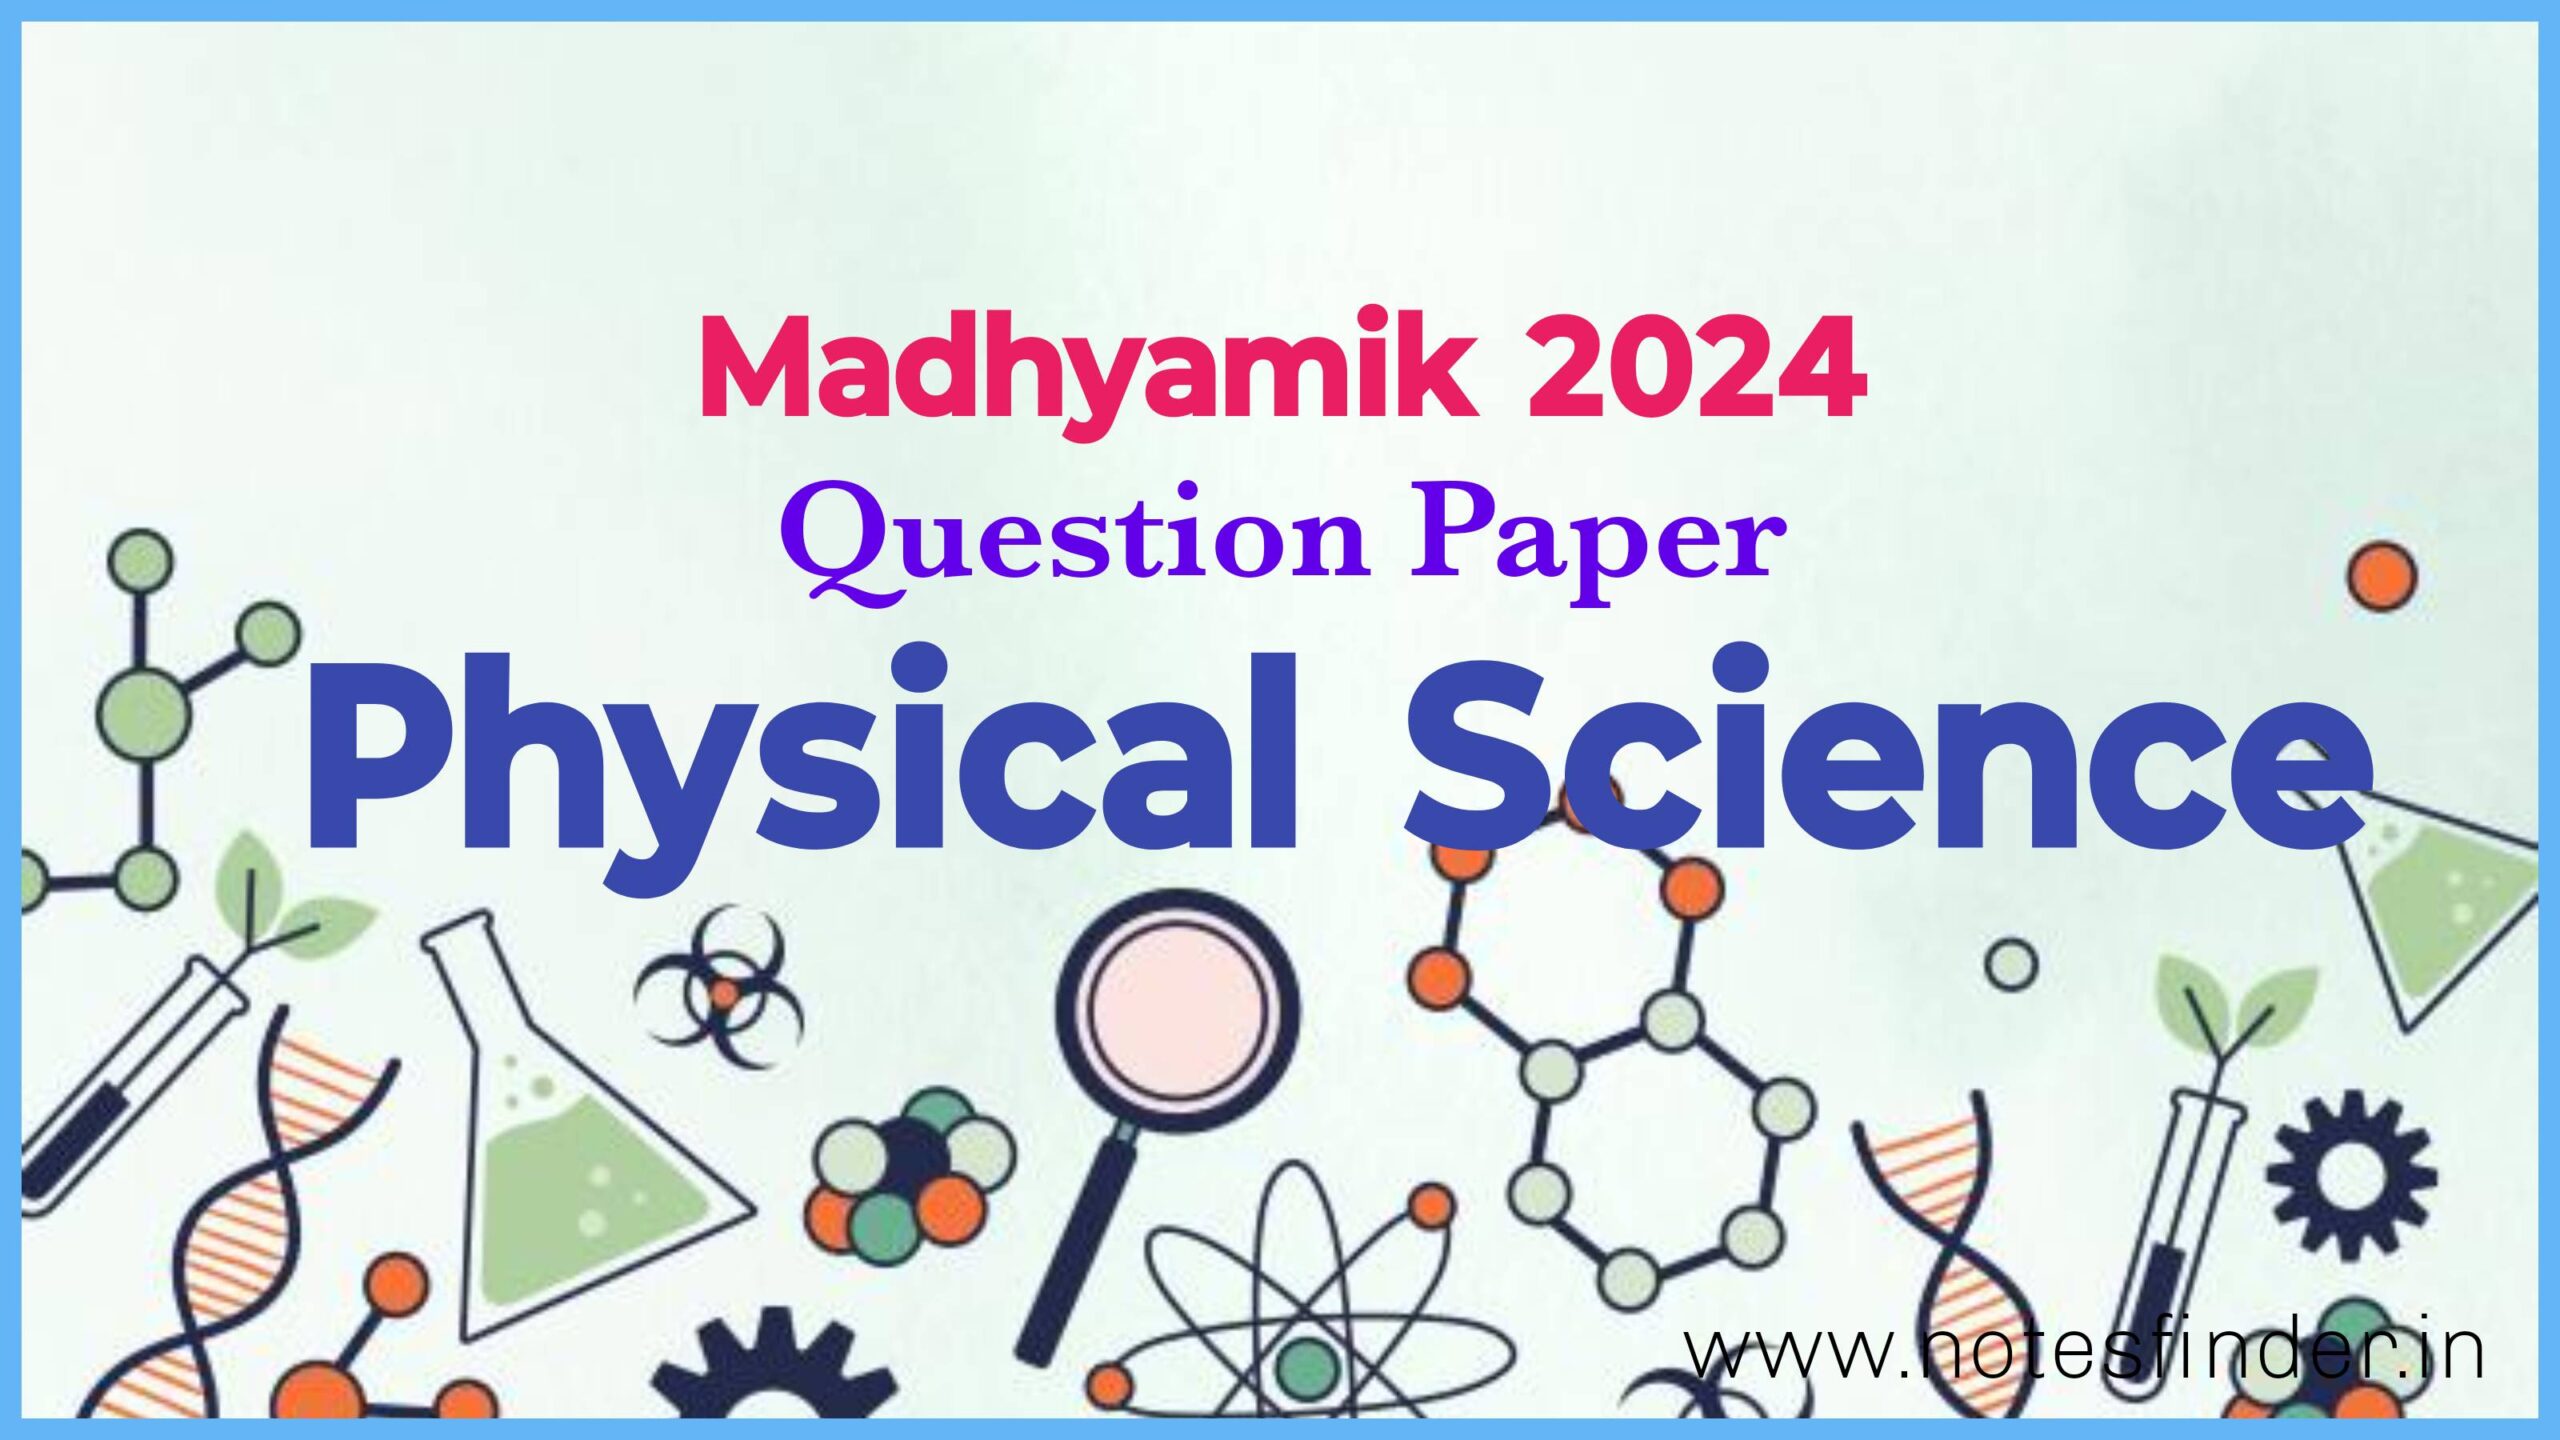 মাধ্যমিক ২০২৪ ভৌত বিজ্ঞান প্রশ্নপত্র | Madhyamik 2024 Physical Science Question Paper Pdf